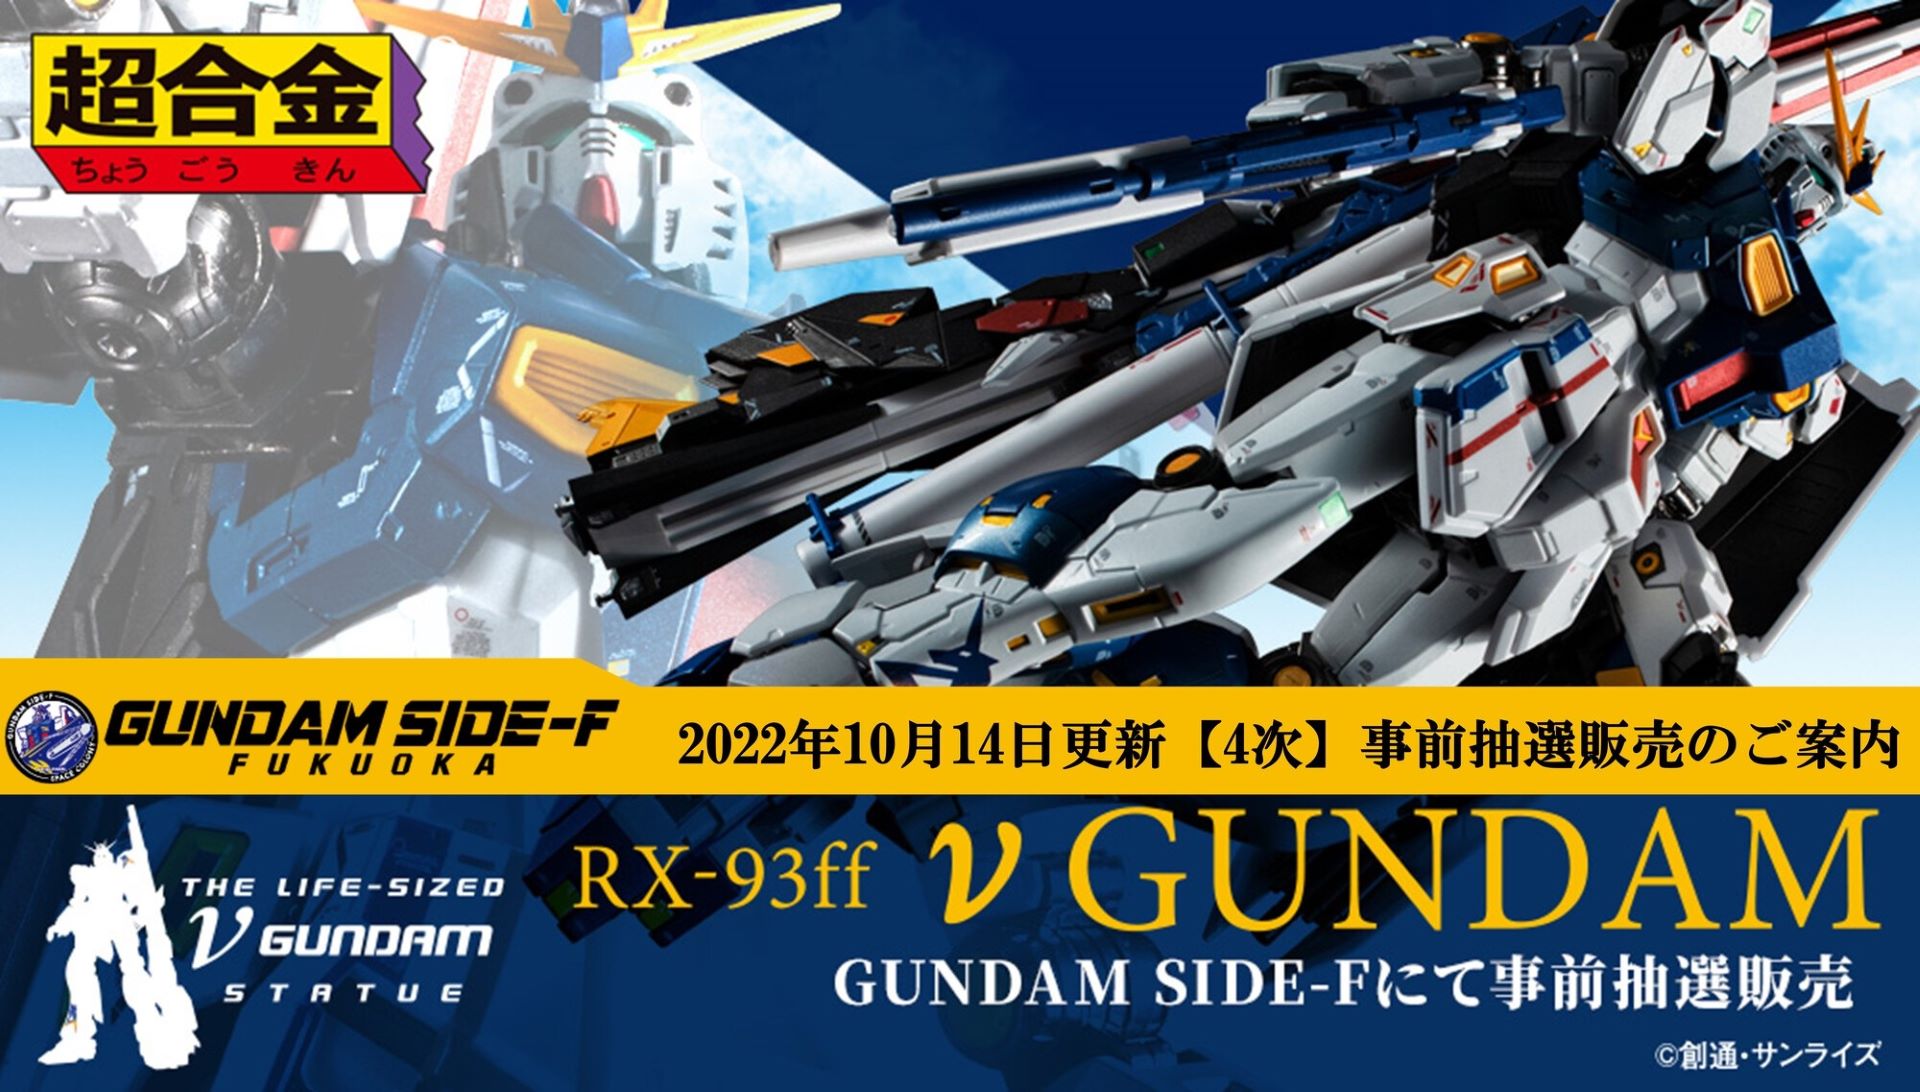 超合金 RX-93ff νガンダム GUNDAM 未開封品